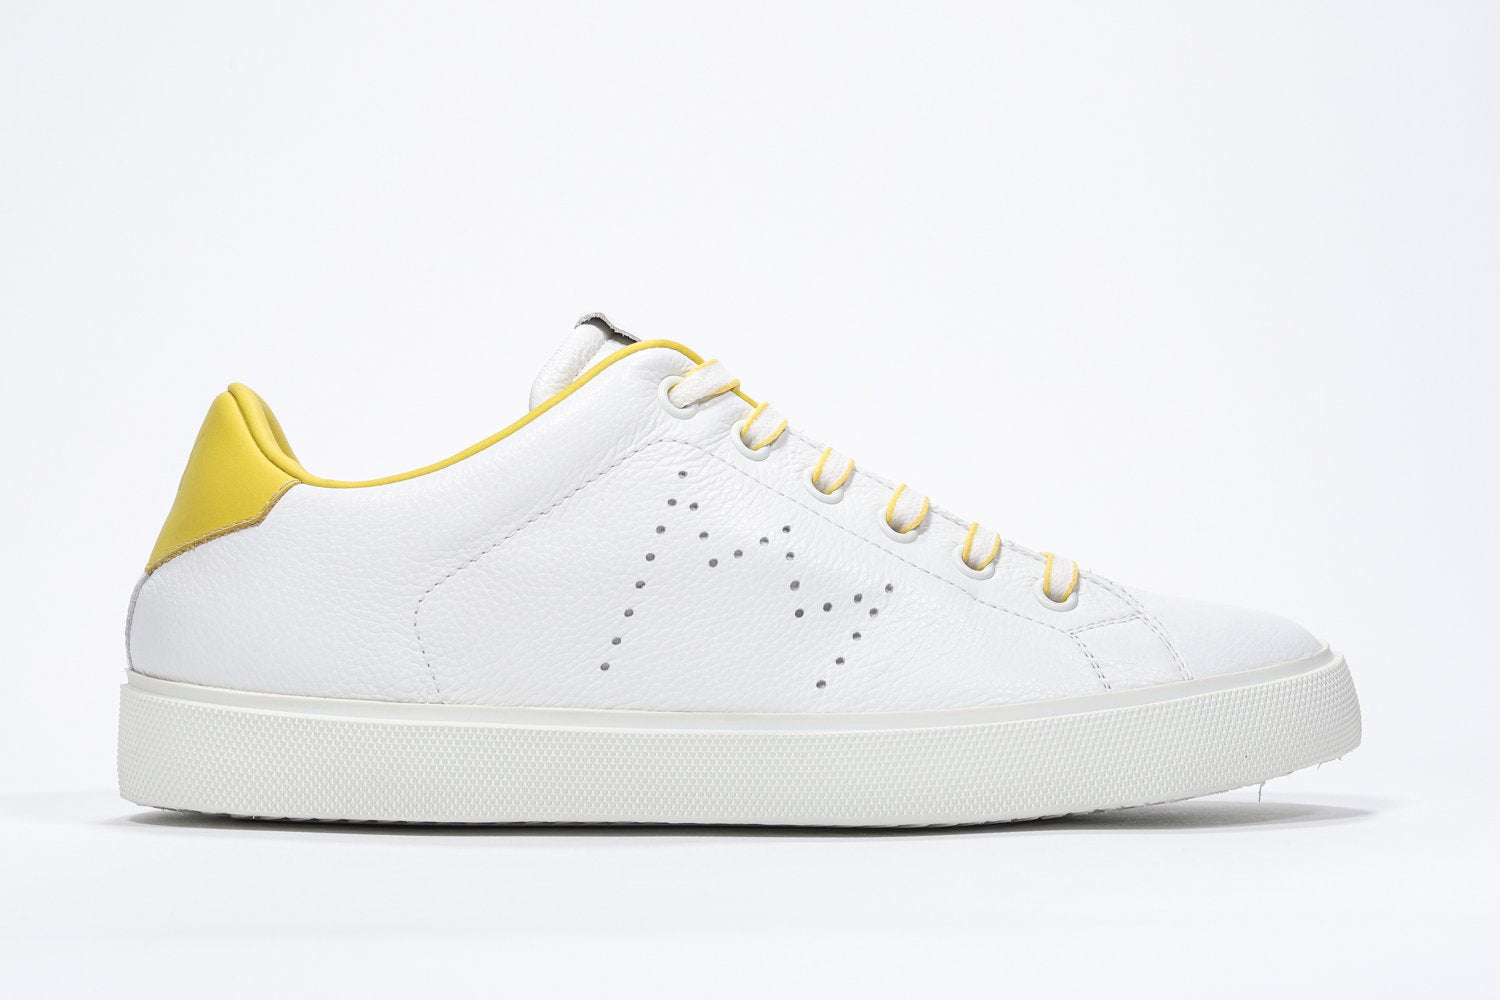 Profilo laterale di BASSE  sneaker  bianco con dettagli gialli e logo della corona traforato sulla tomaia. Tomaia in pelle e suola in gomma bianca.